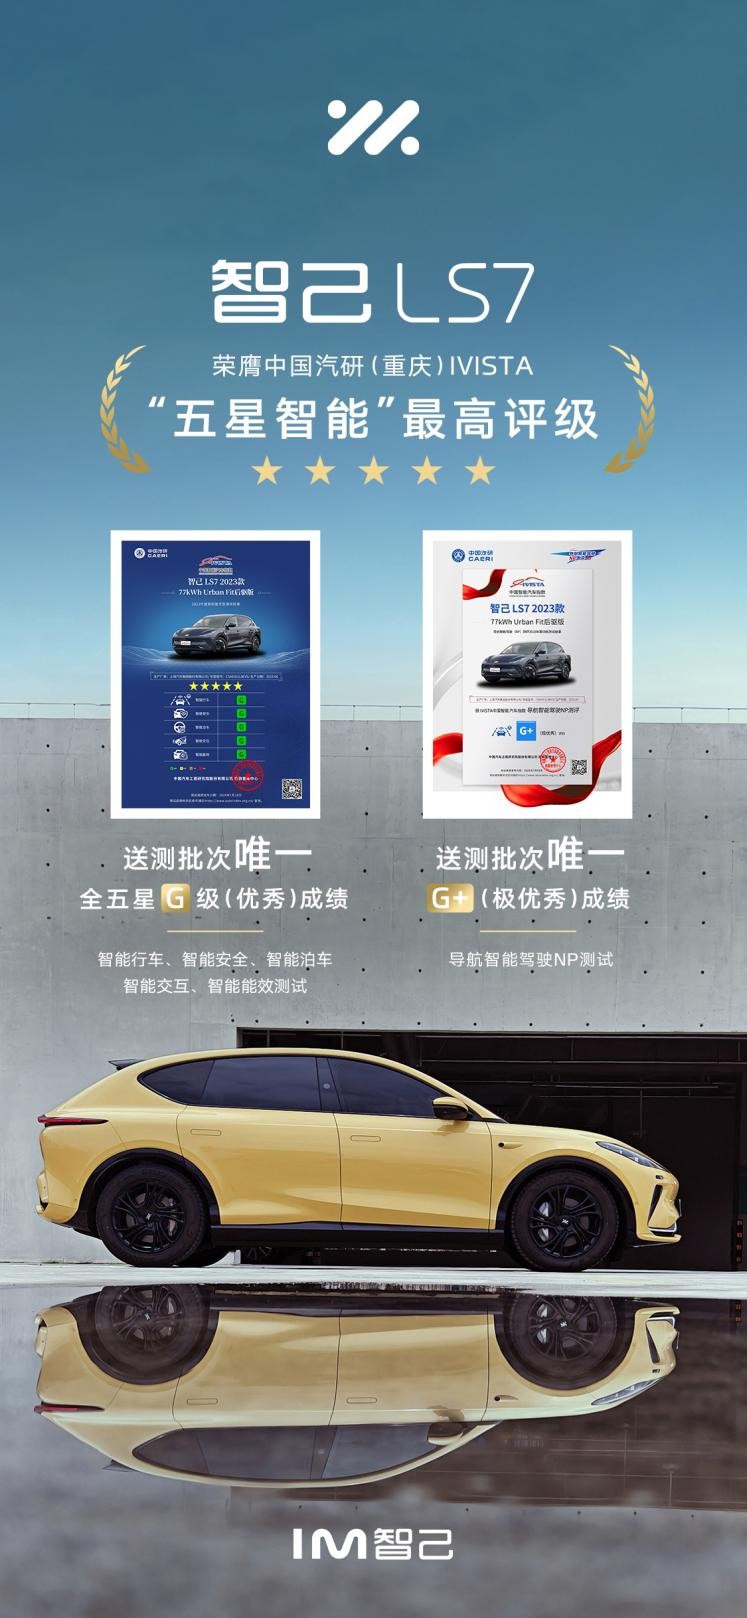 智己LS7荣获IVISTA中国智能汽车指数五星评价